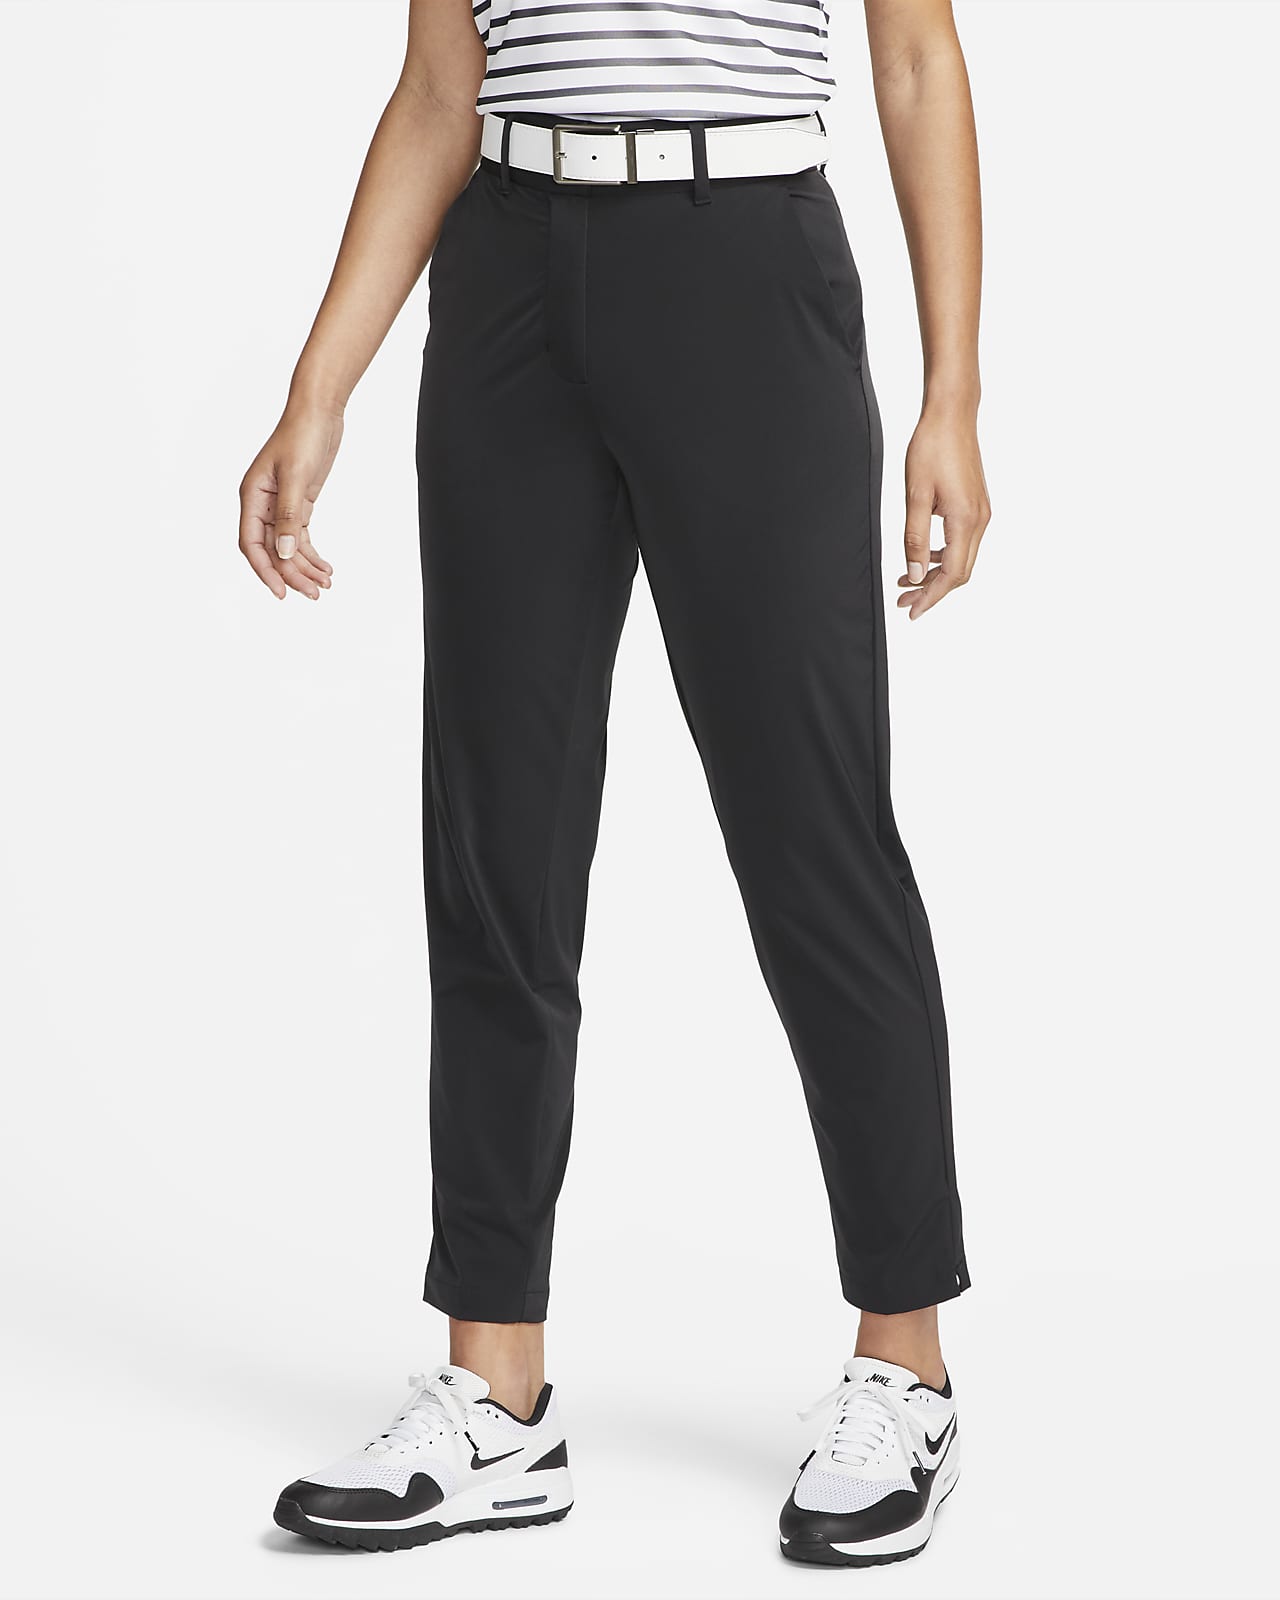 Pantalon de golf Nike Dri-FIT Tour pour femme